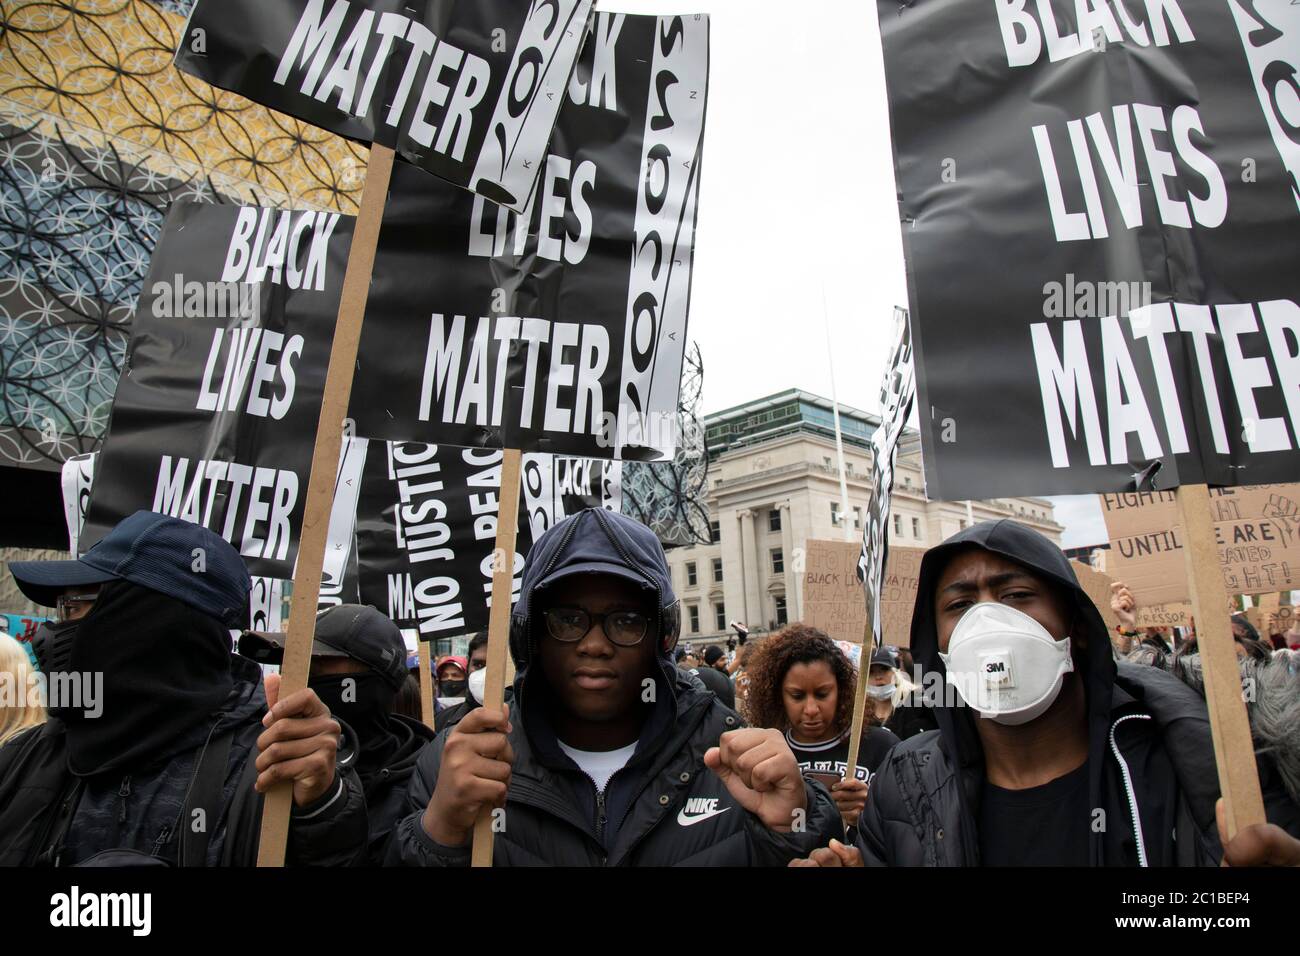 Après la mort de George Floyd alors qu'il était sous la garde de la police à Minneapolis, des manifestations de solidarité ont commencé partout dans le monde, alors que des gens se rassemblent pour protester contre le racisme institutionnel et pour soutenir le mouvement Black Lives Matter, vu ici avec des milliers de personnes, Principalement en portant des masques, se réunissant sur la place du Centenaire le 4 juin 2020 à Birmingham, Angleterre, Royaume-Uni. Black Lives Matter est un mouvement international des droits de l'homme, originaire de la communauté afro-américaine, qui lutte contre la violence et le racisme systémique à l'égard des Noirs. Banque D'Images